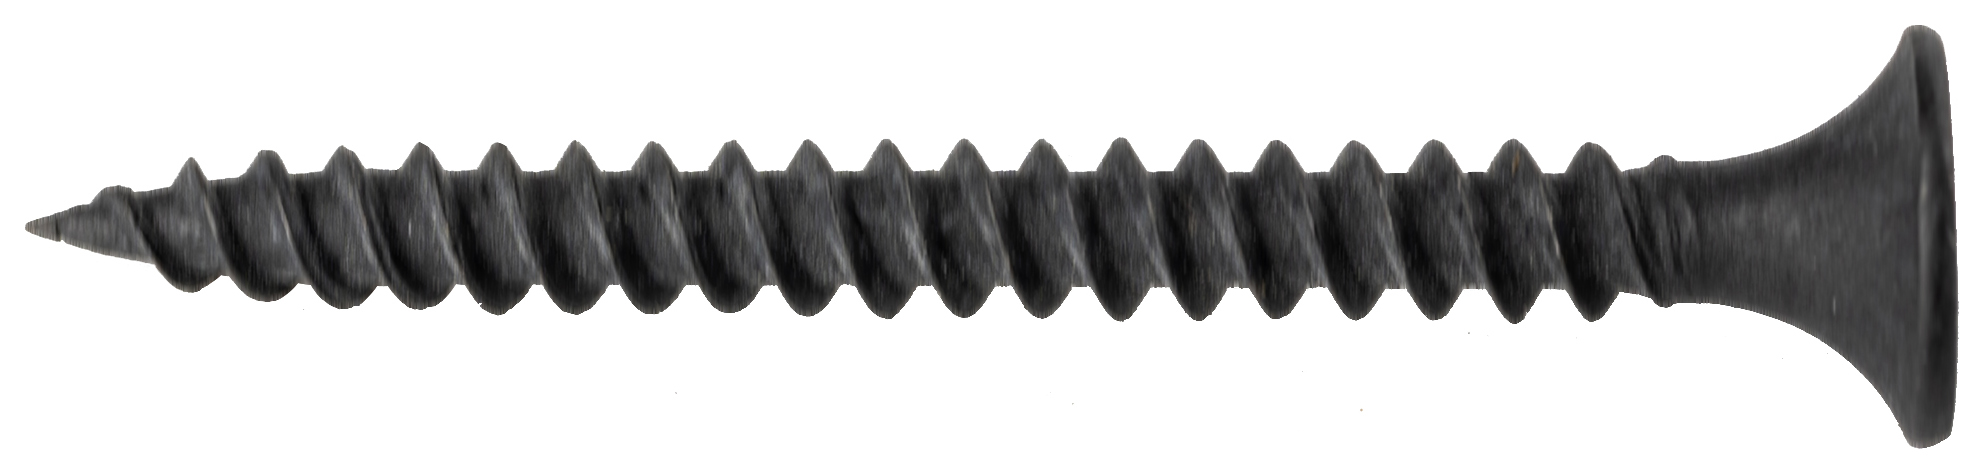 Wickes Fine Thread Black Phosphated Plasterboard Screws - 38mm - Pack of 200